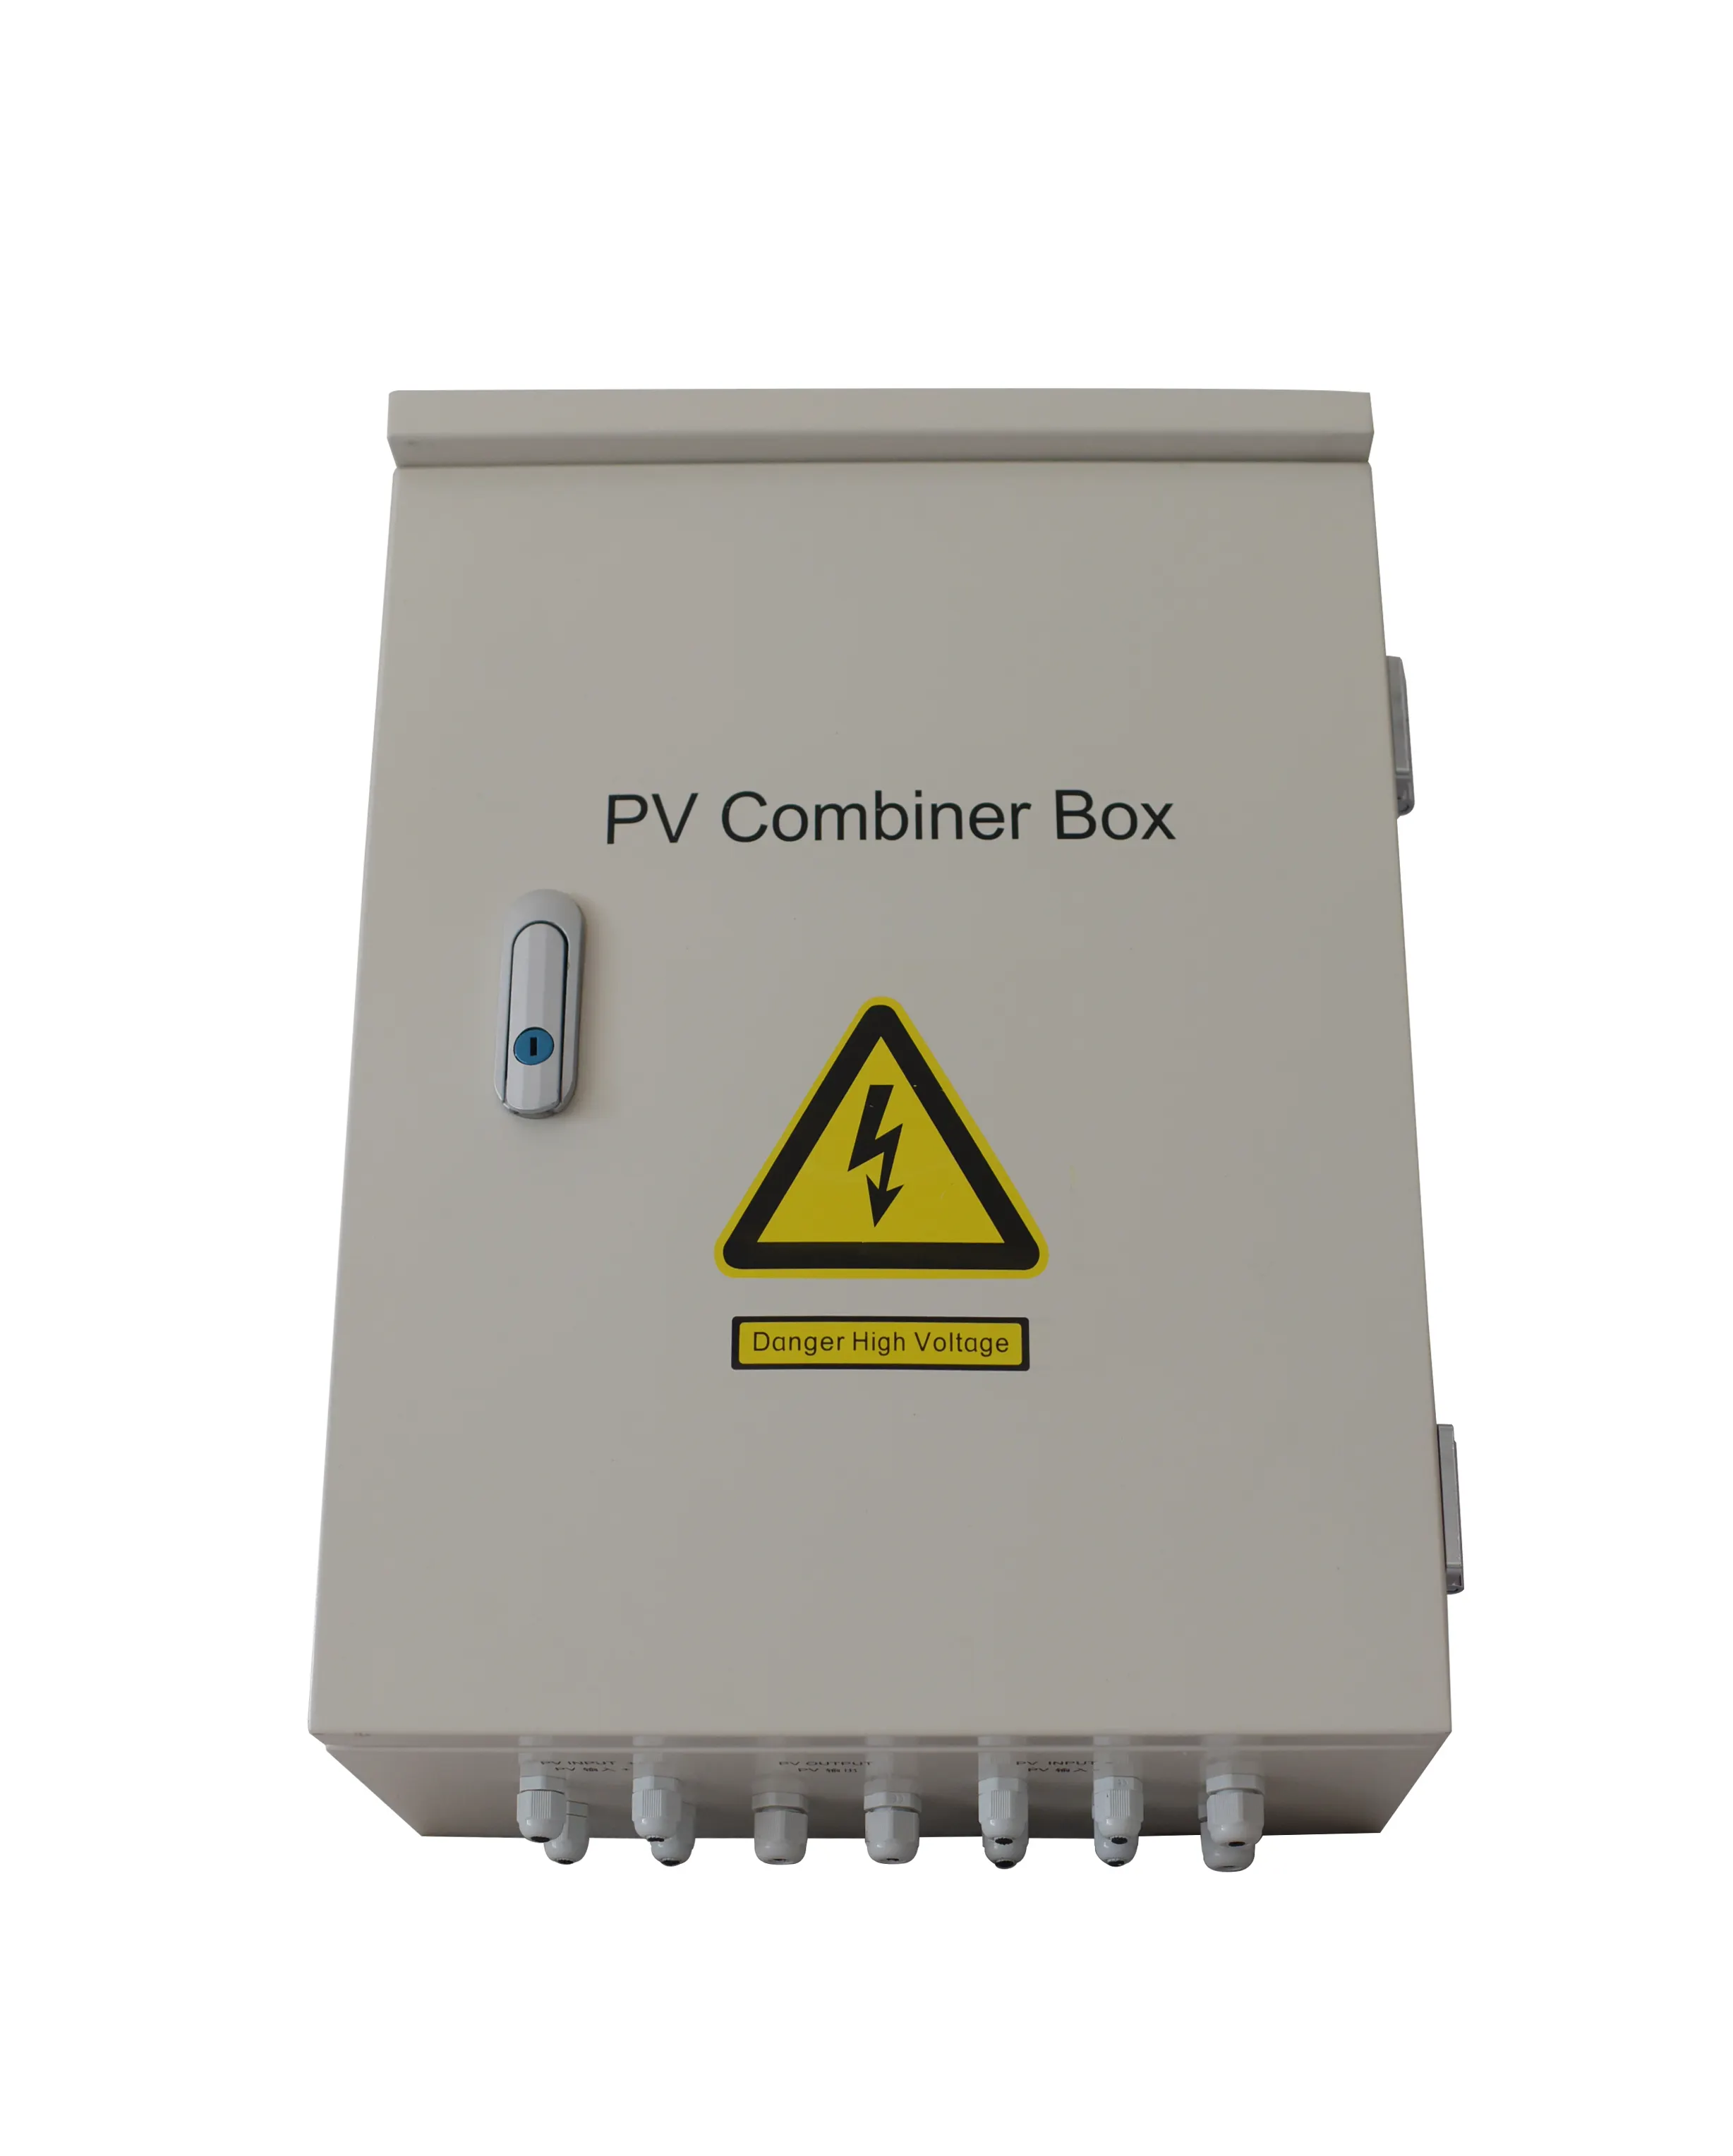 पीवी combiner बॉक्स 8 इनपुट 1 उत्पादन के लिए सौर संयंत्र